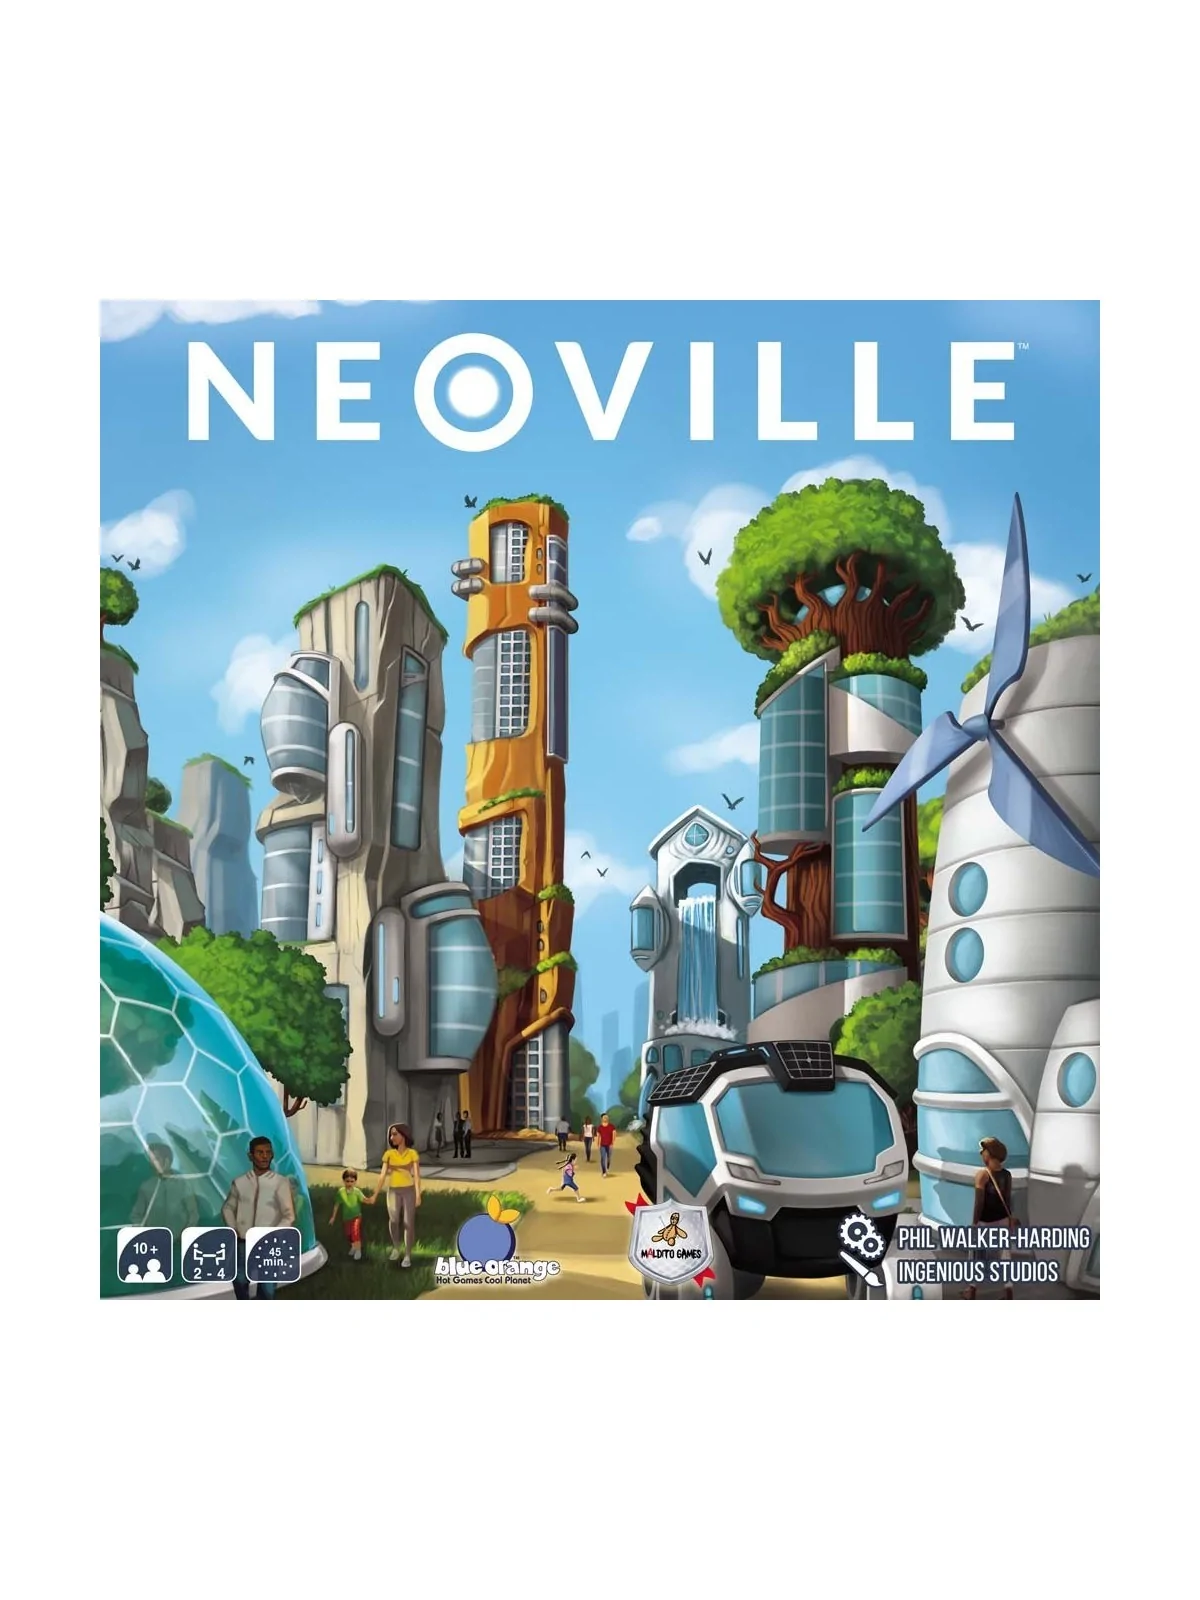 Comprar Neoville barato al mejor precio 24,30 € de Maldito Games